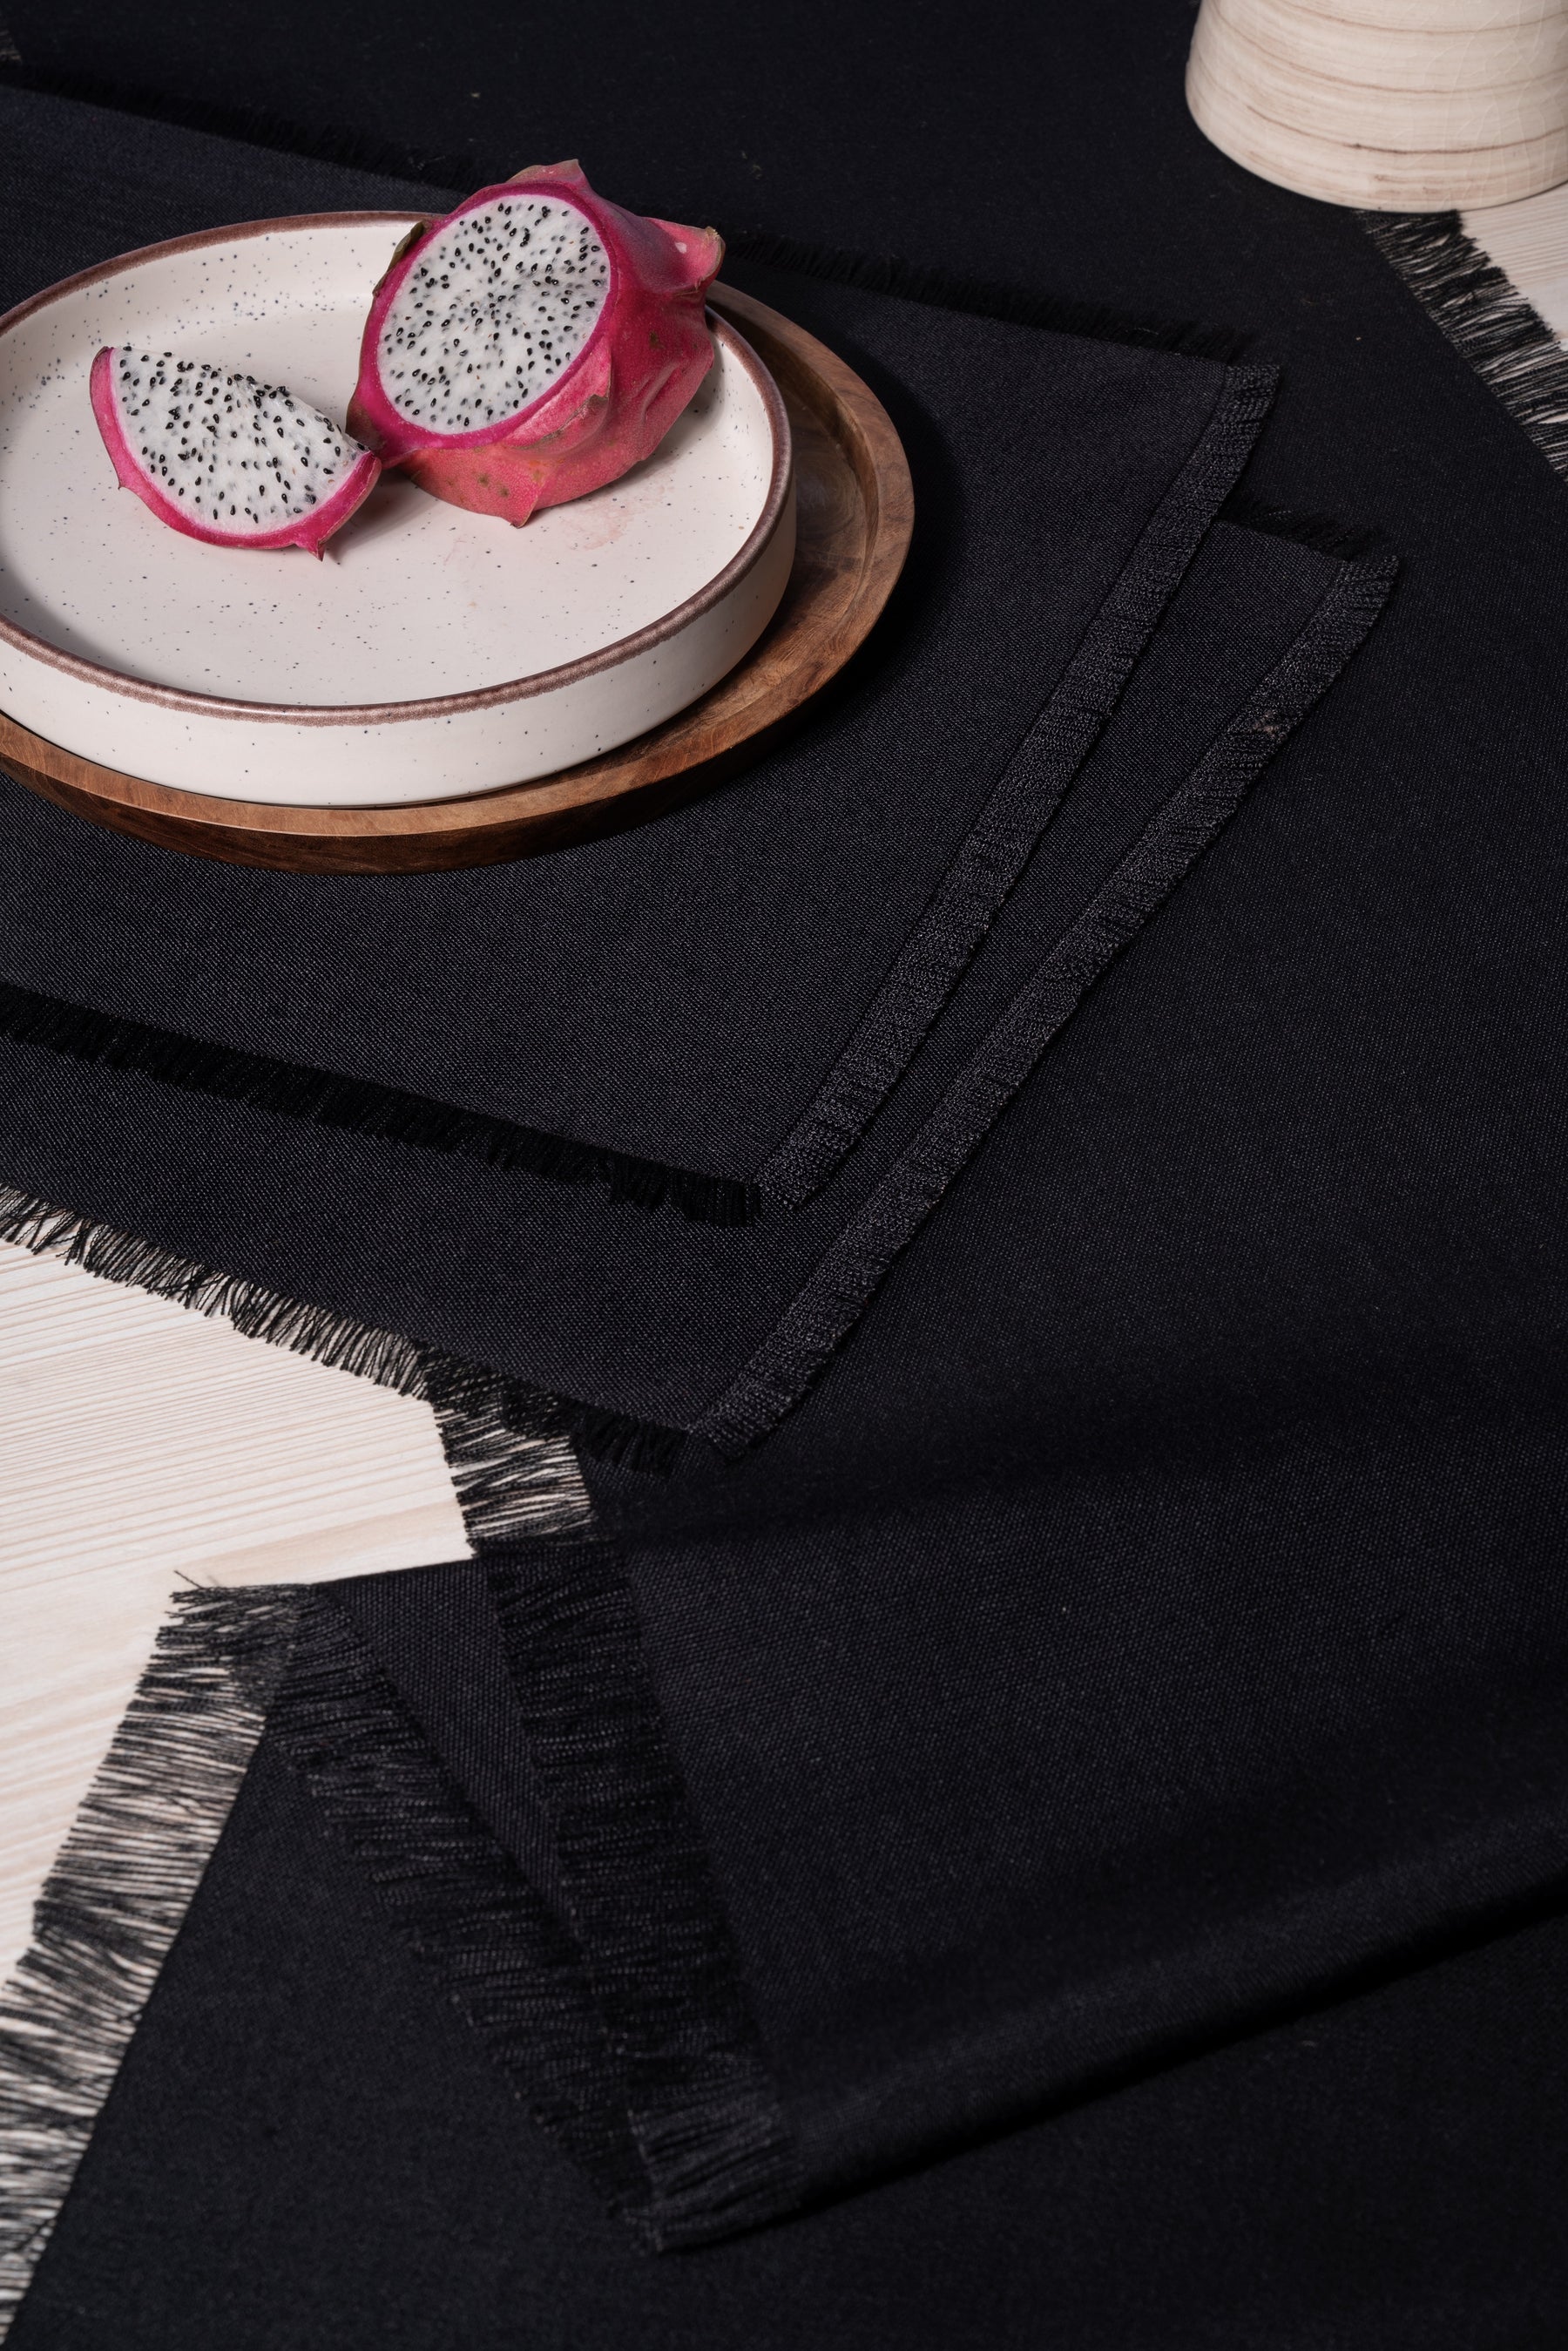 Black Linen Textured Table Runner - Fringe